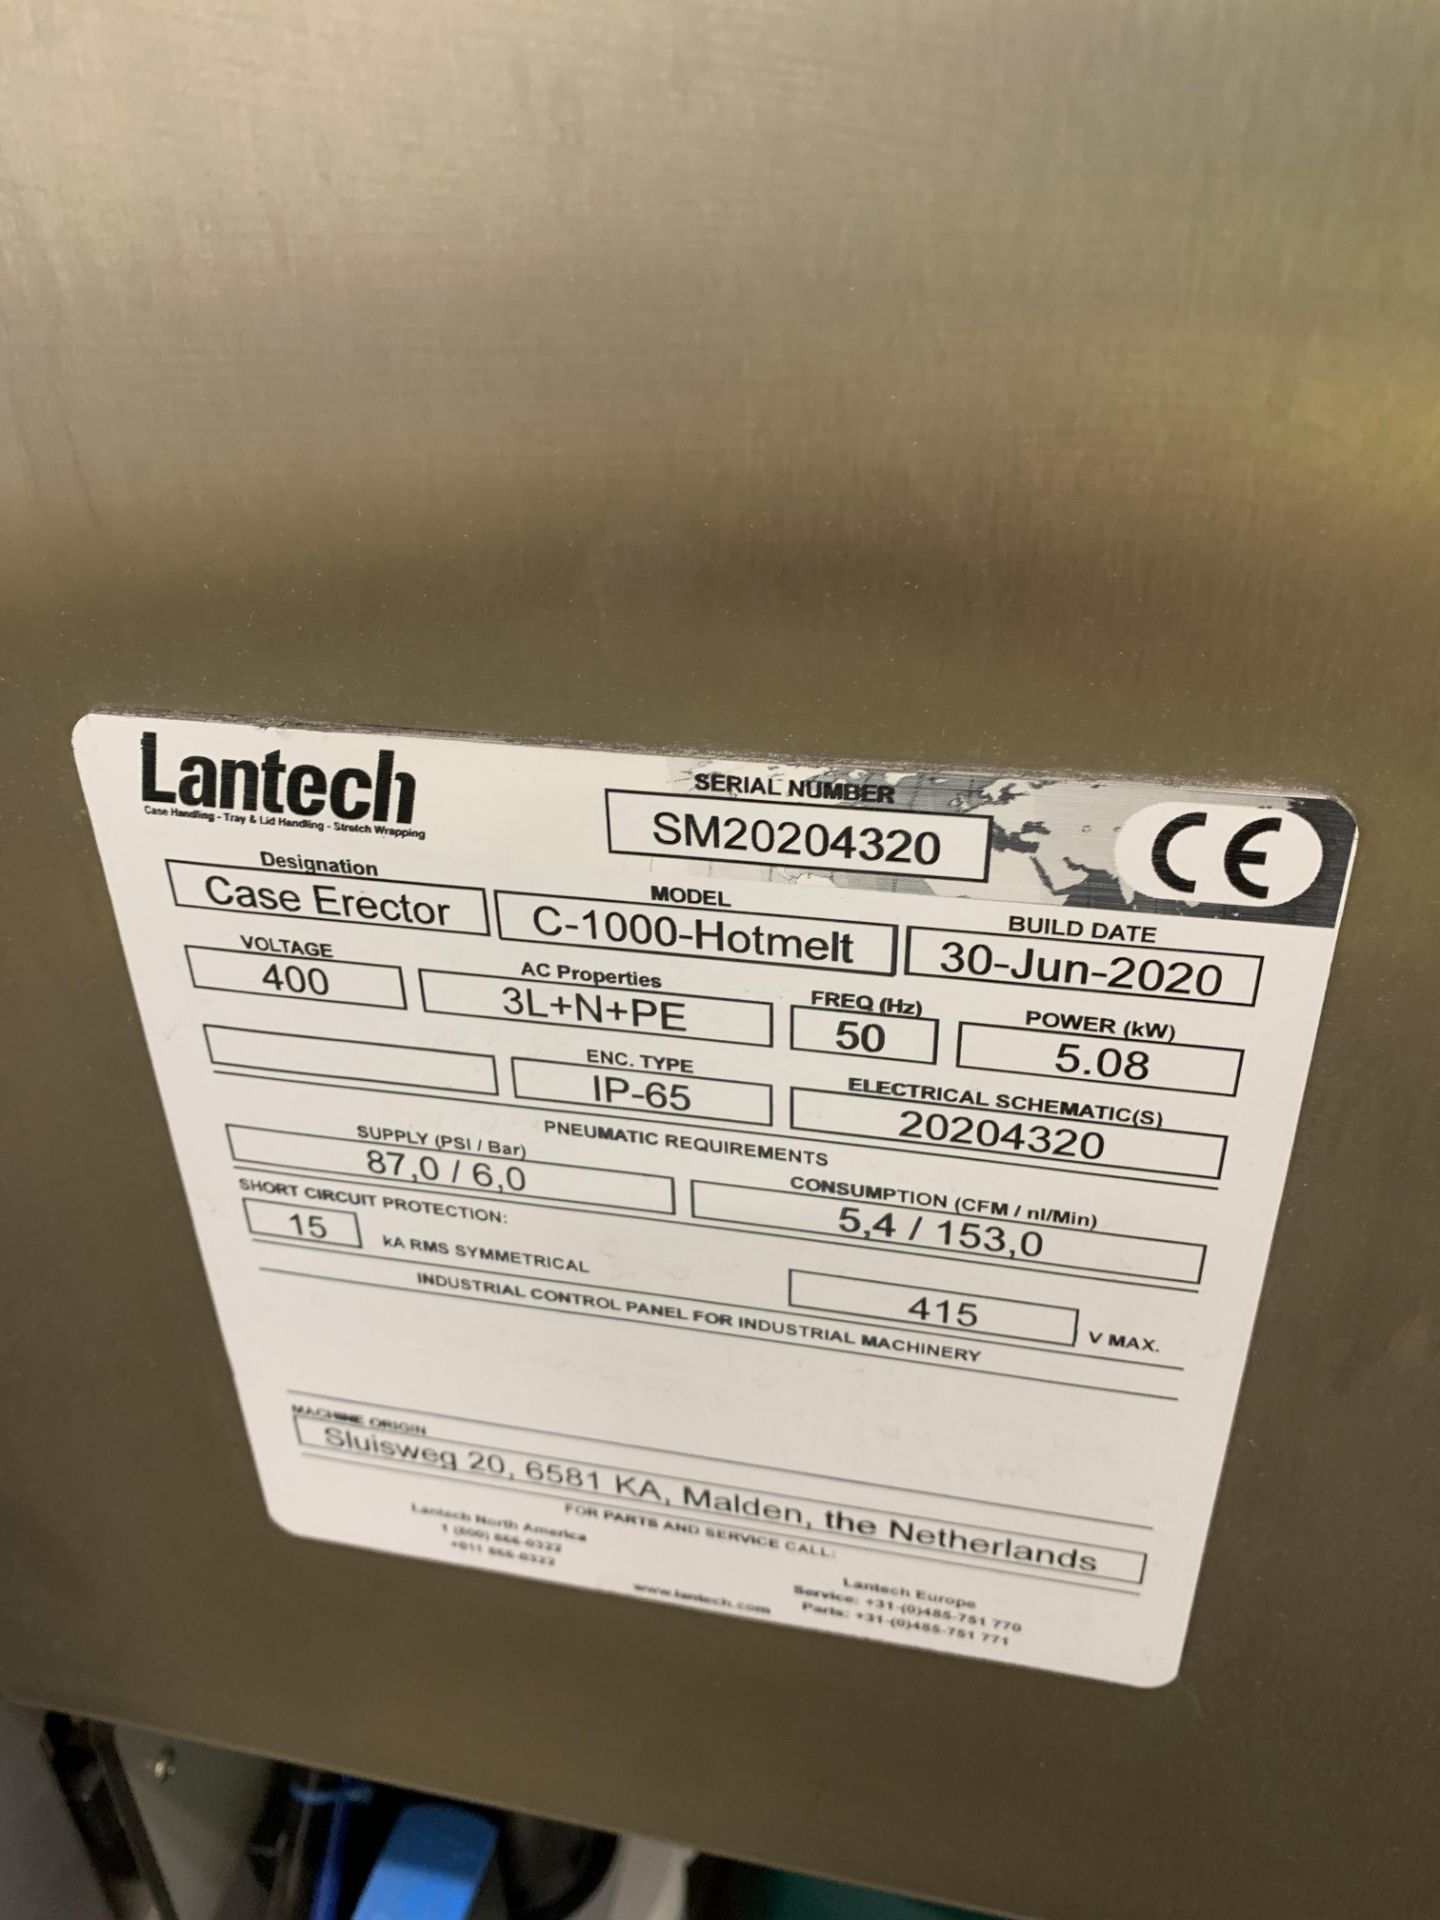 Lantech C-1000-Hotmelt case erector - Image 3 of 4